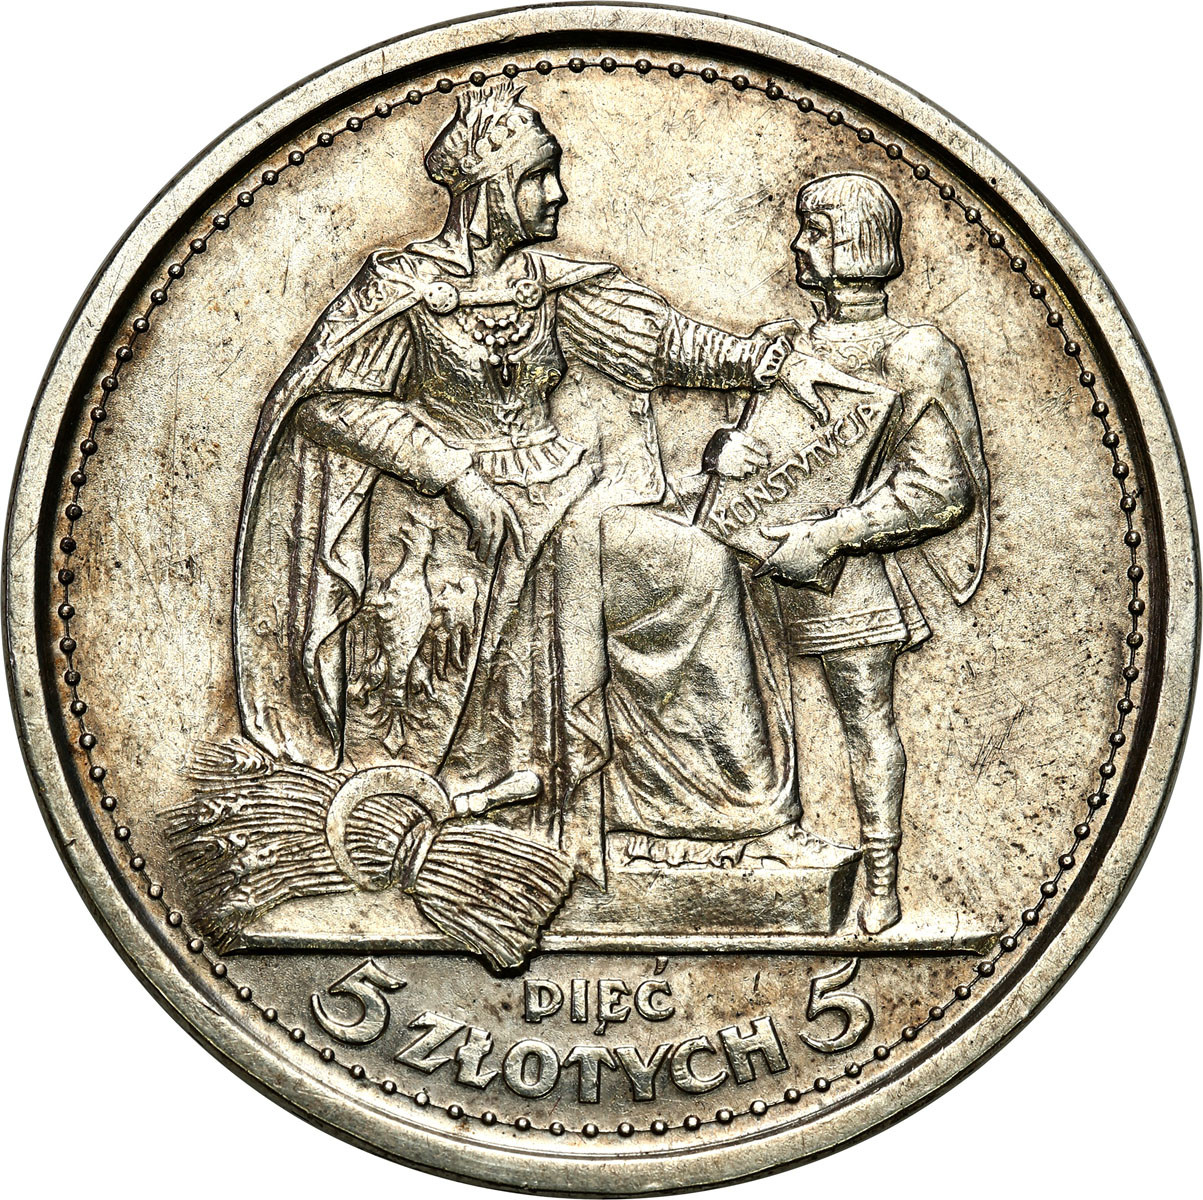 Konstytucja 5 złotych 1925 - 100 perełek - PIĘKNA i RZADKA